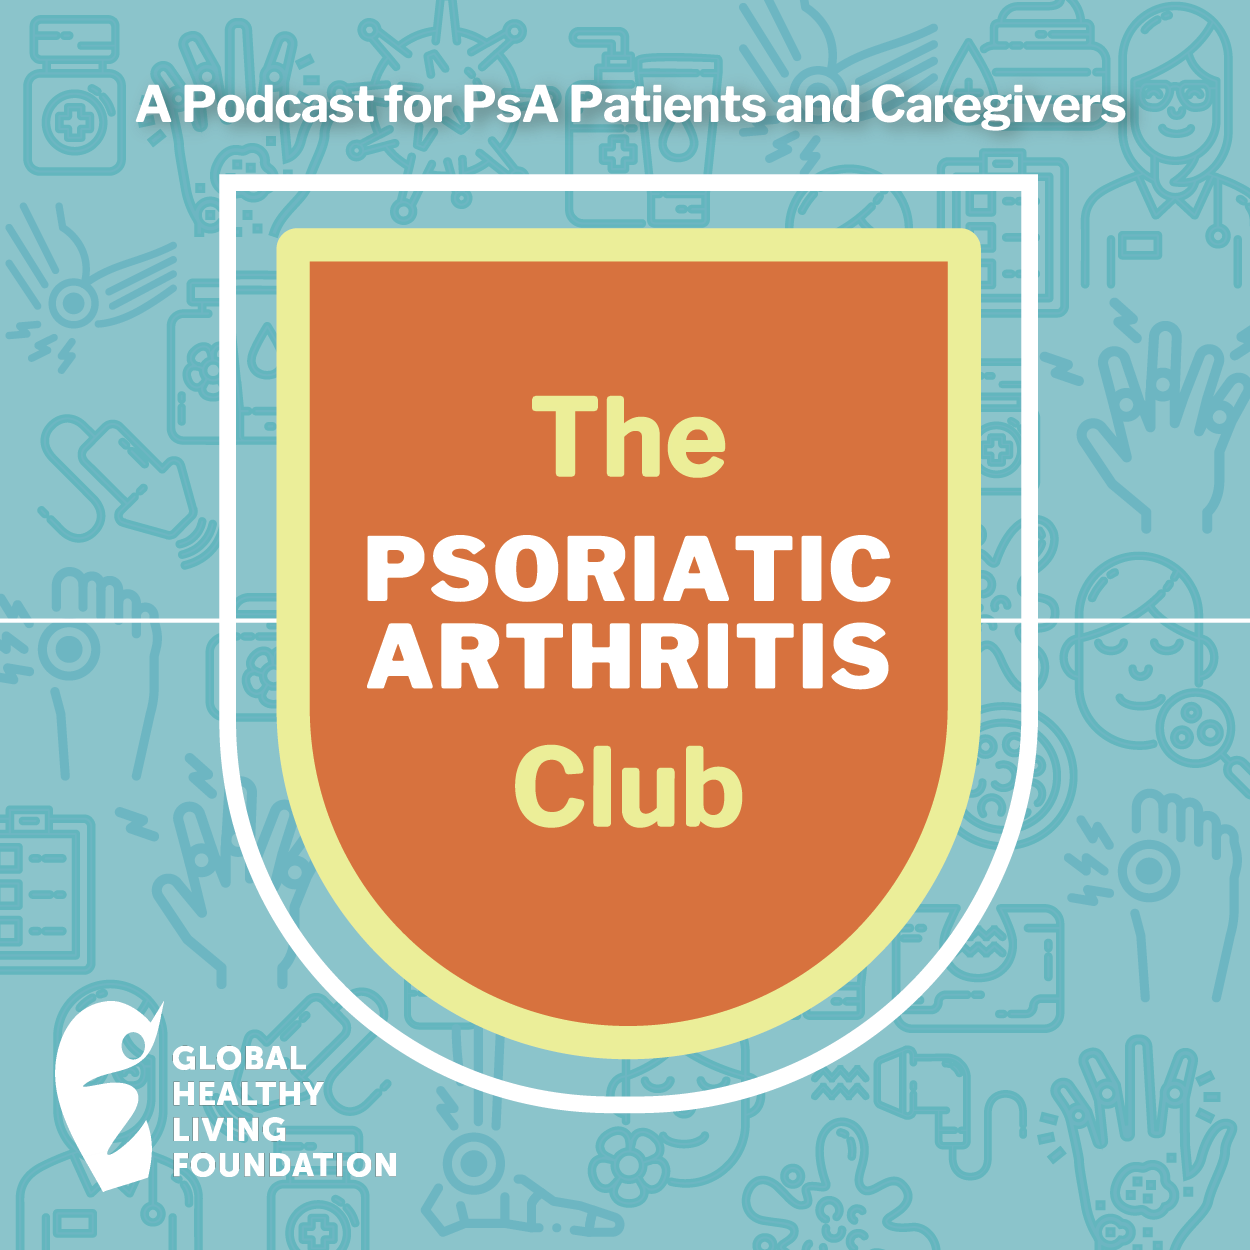 The Psoriatic Arthritis Club